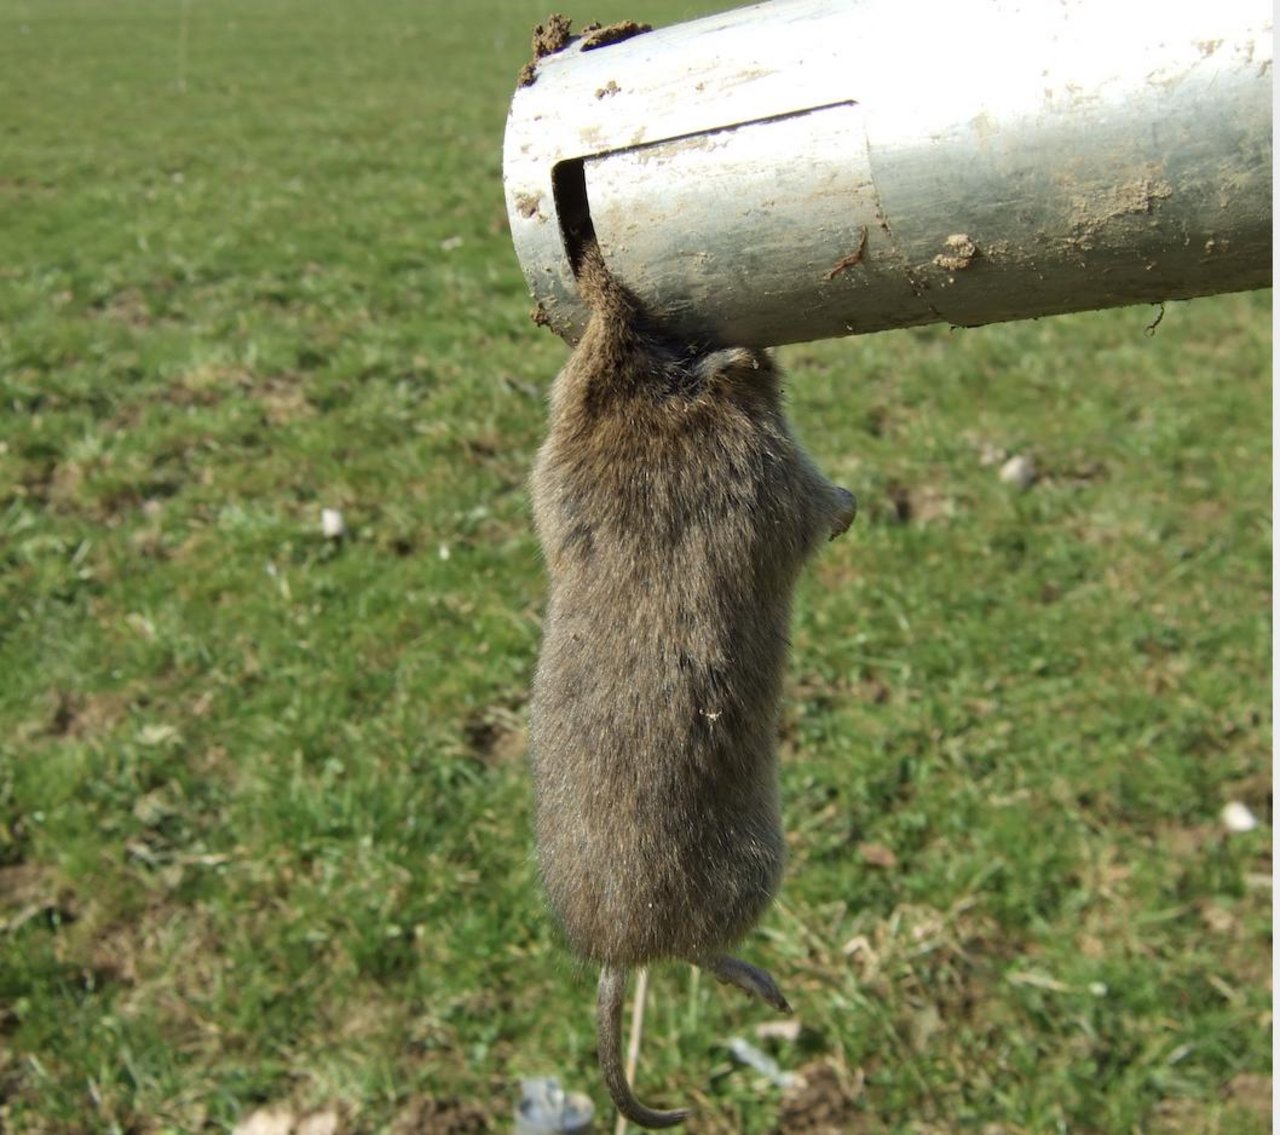 Beim Mausen sollte man auf Gift verzichten, denn es schadet anderen Tieren und ist zudem teuer. (Bild Cornel Stutz)